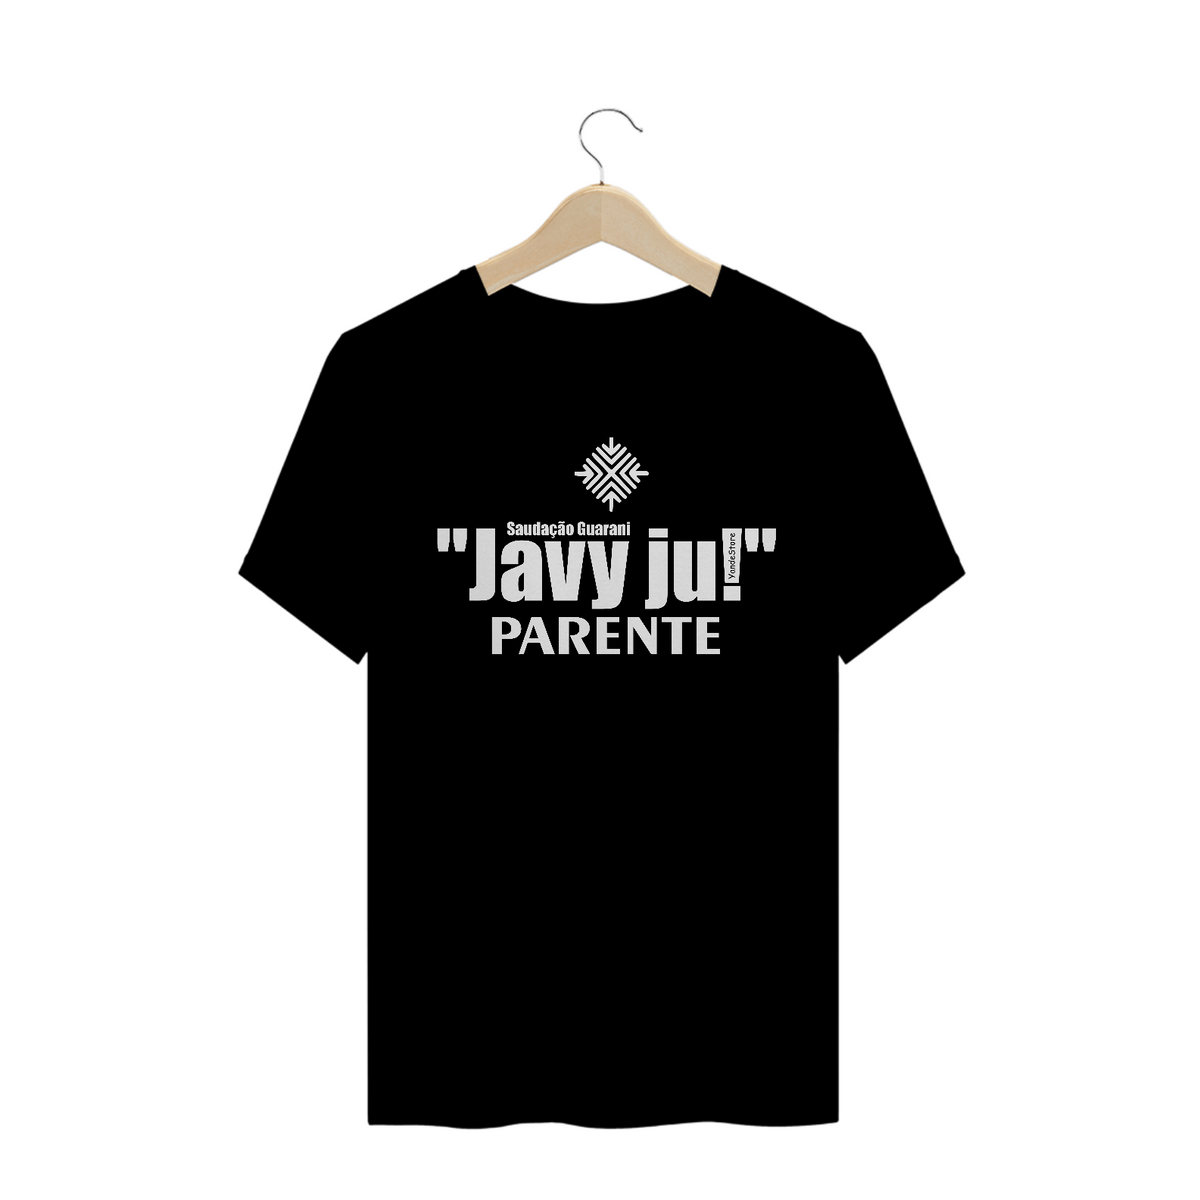 Nome do produto: T- Shirt Bom dia – Javy ju! Parente 2